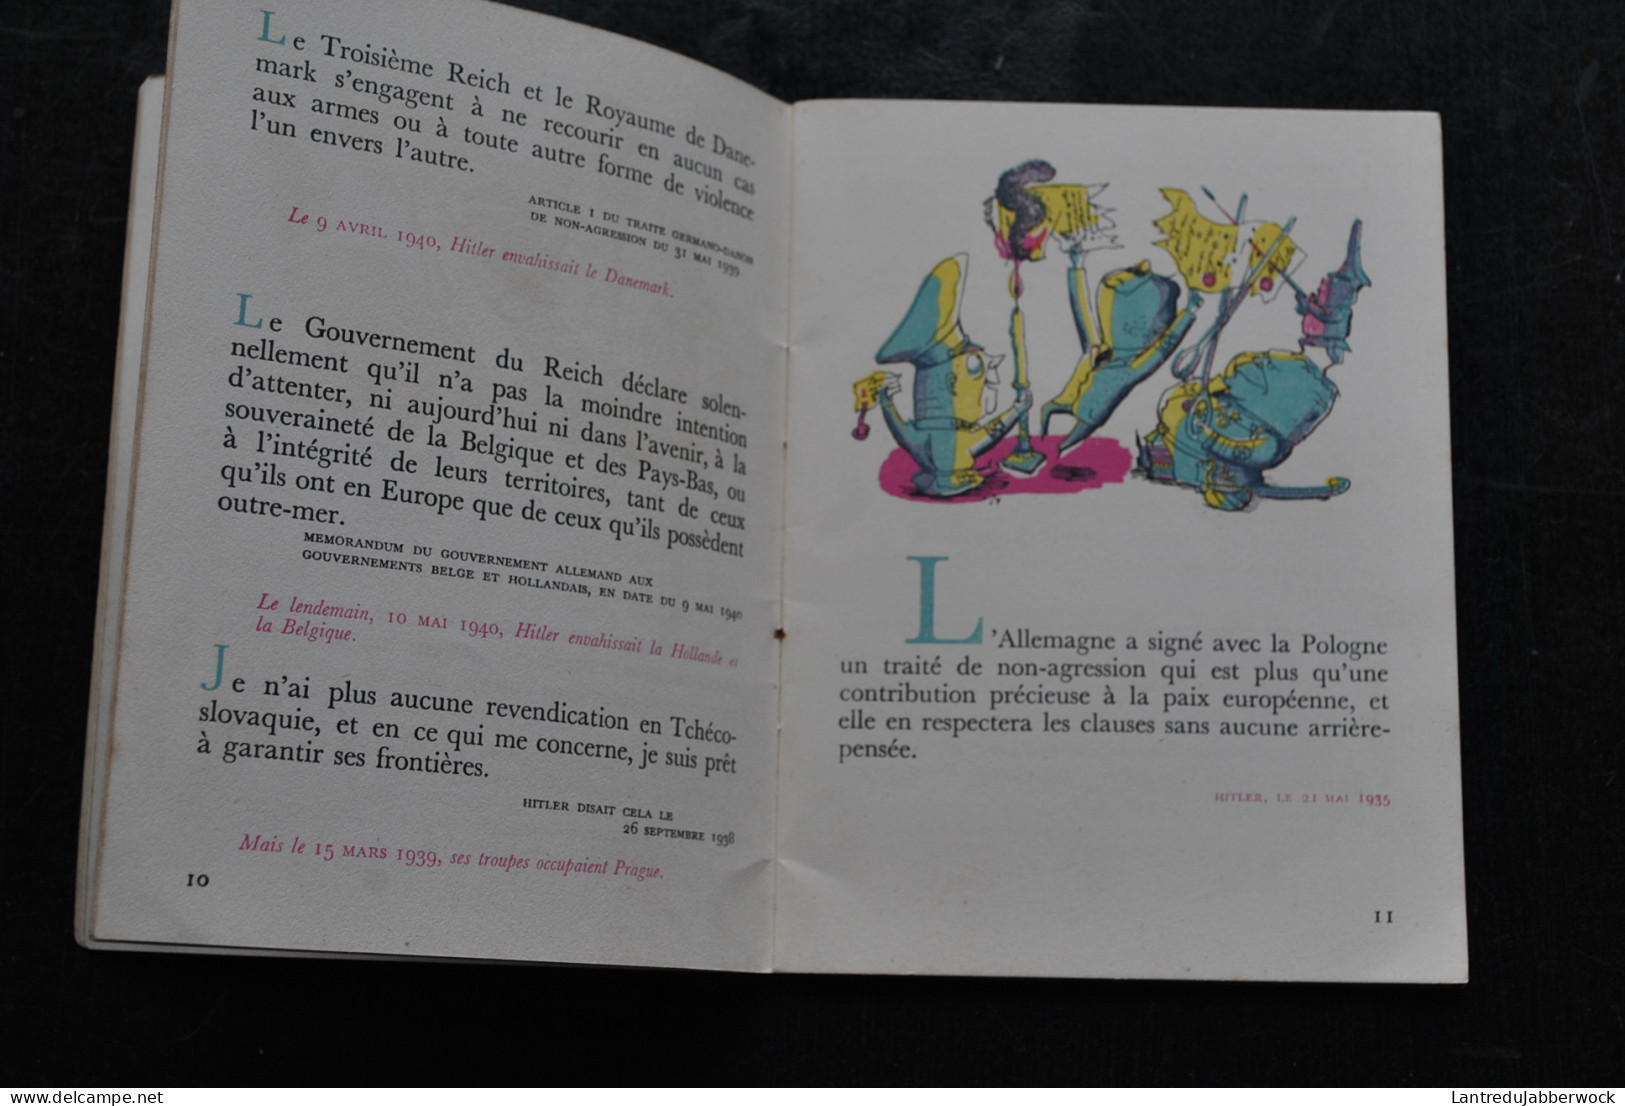 L'ART DE MENTIR - PETIT MANUEL SUR L'ART DU MENSONGE HITLER GOEBBELS CARICATURE SATIRE MENSONGE WW2 Critique - French